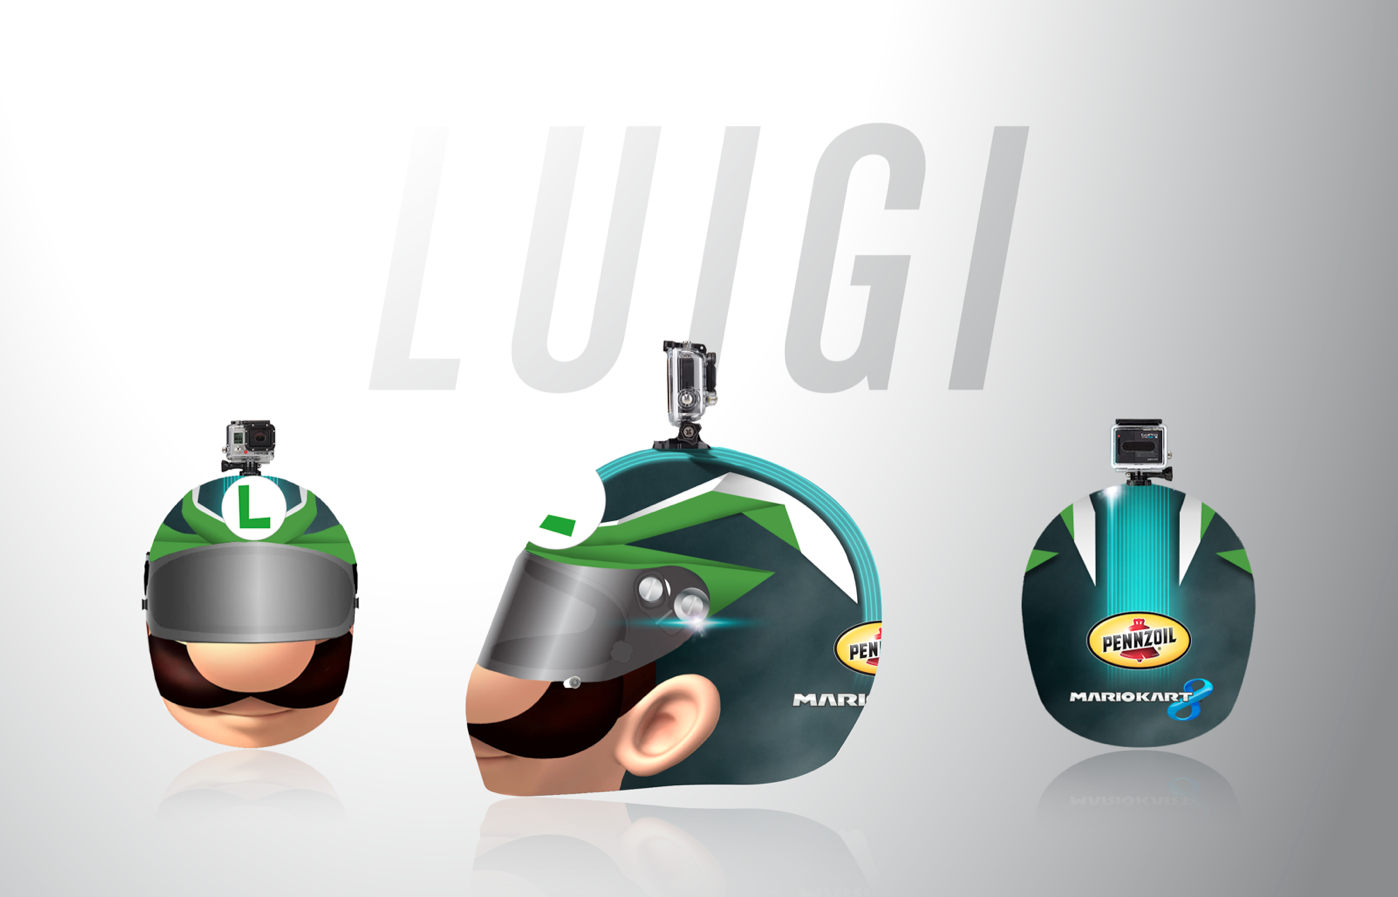 Luigi_01.png